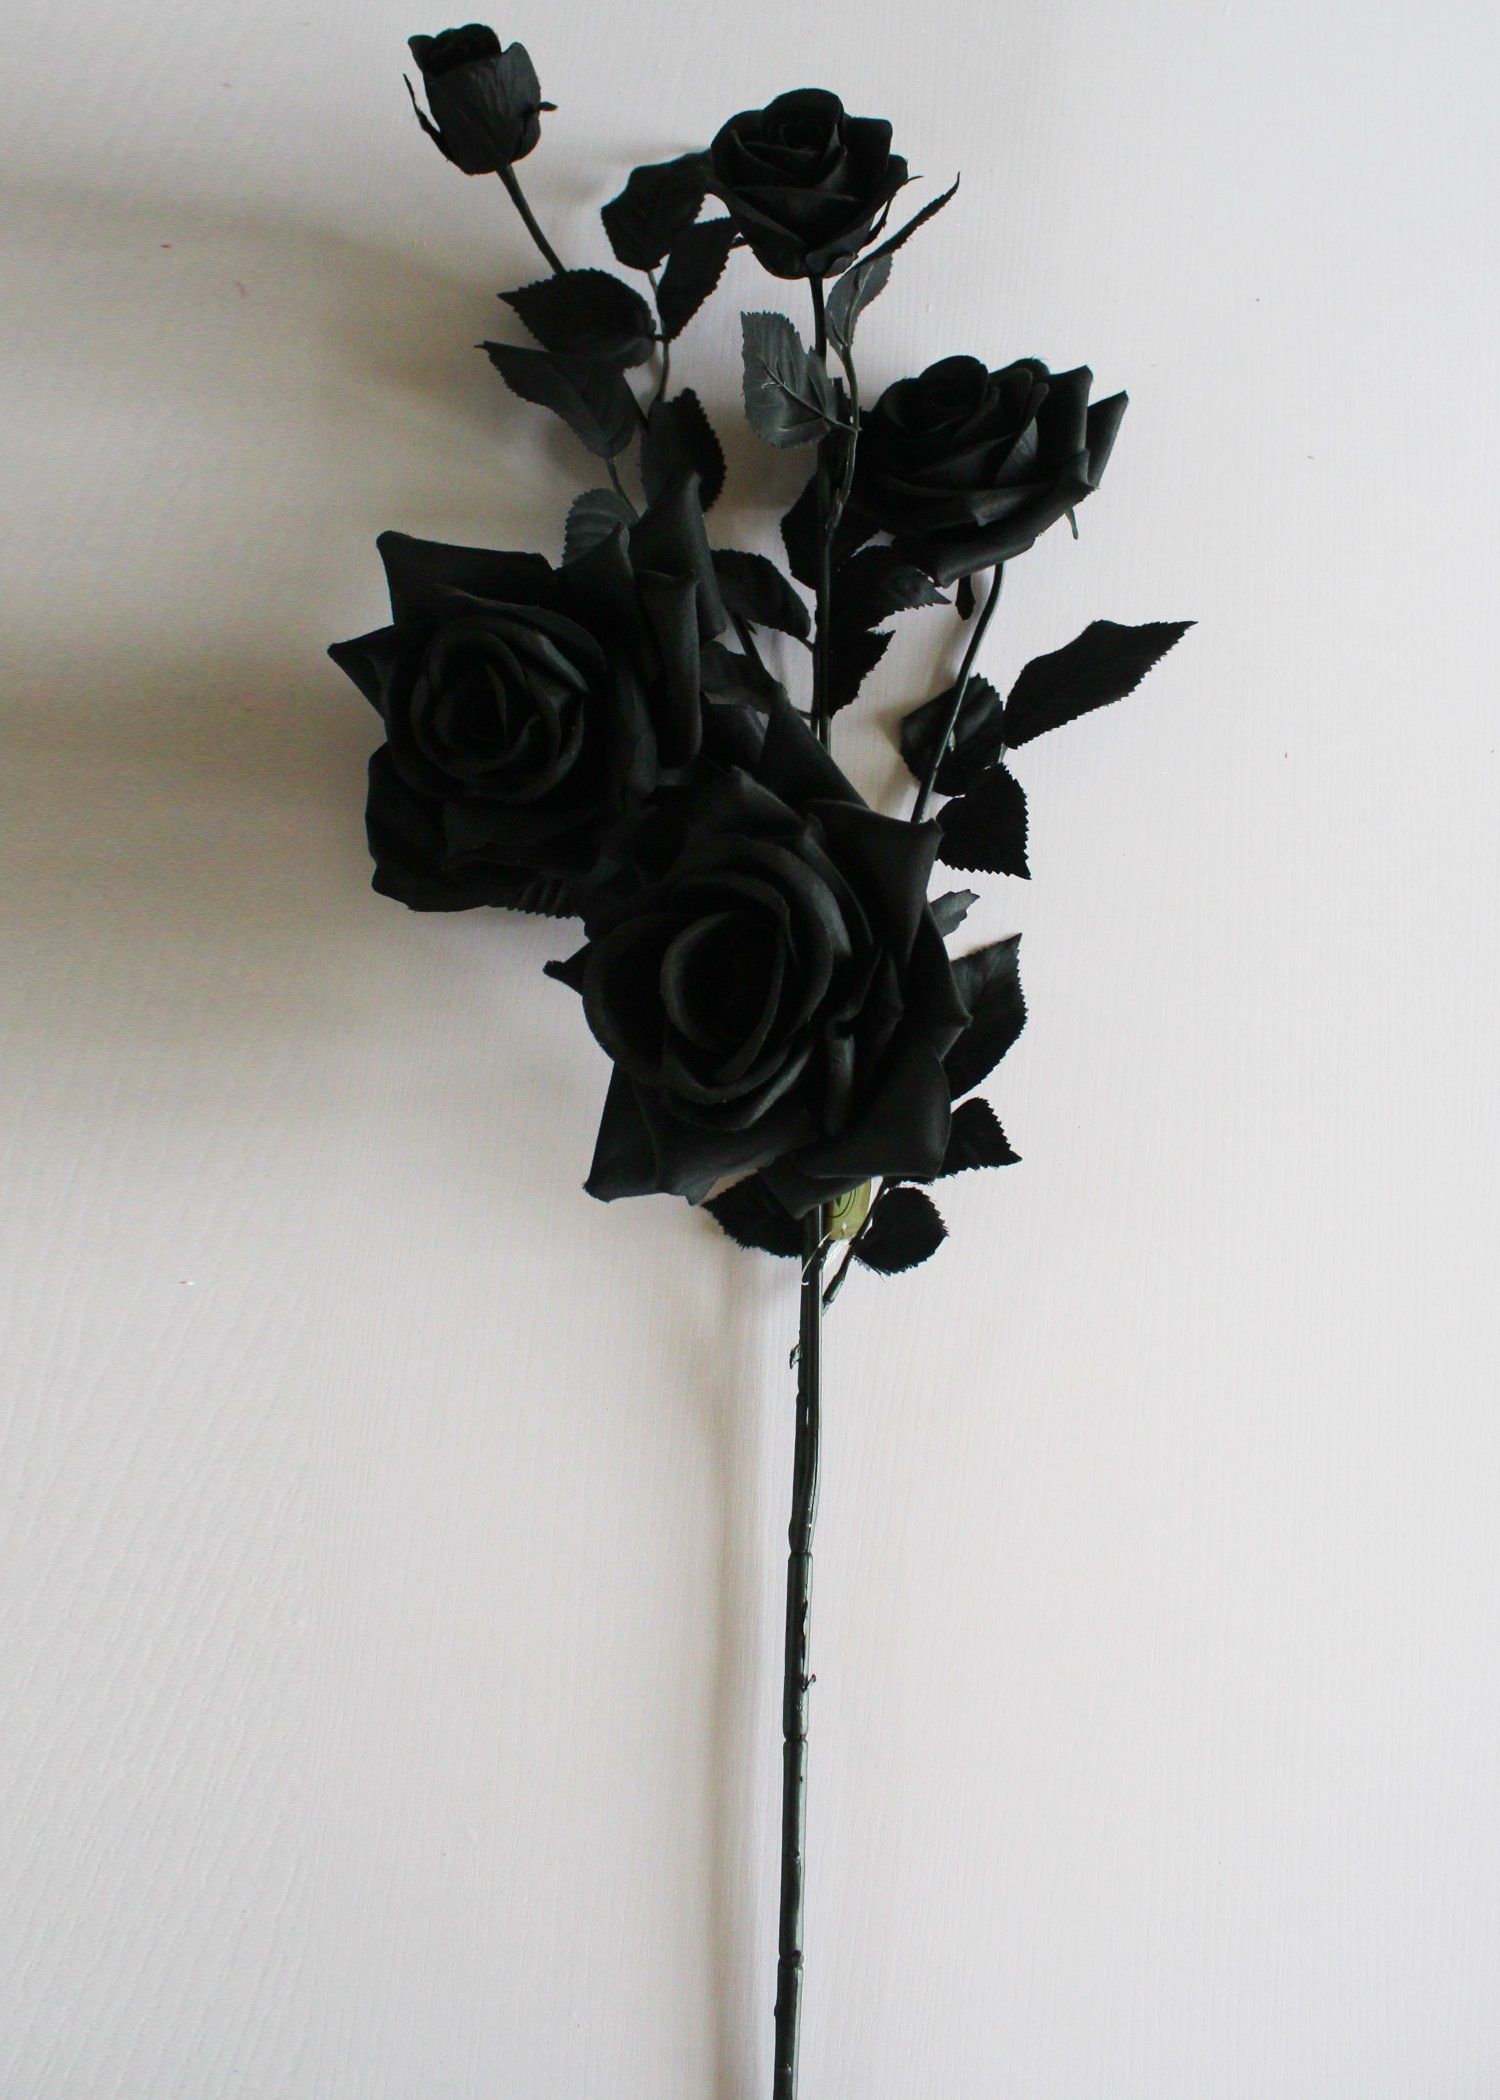 Black Roses HD Wallpaper Free Download